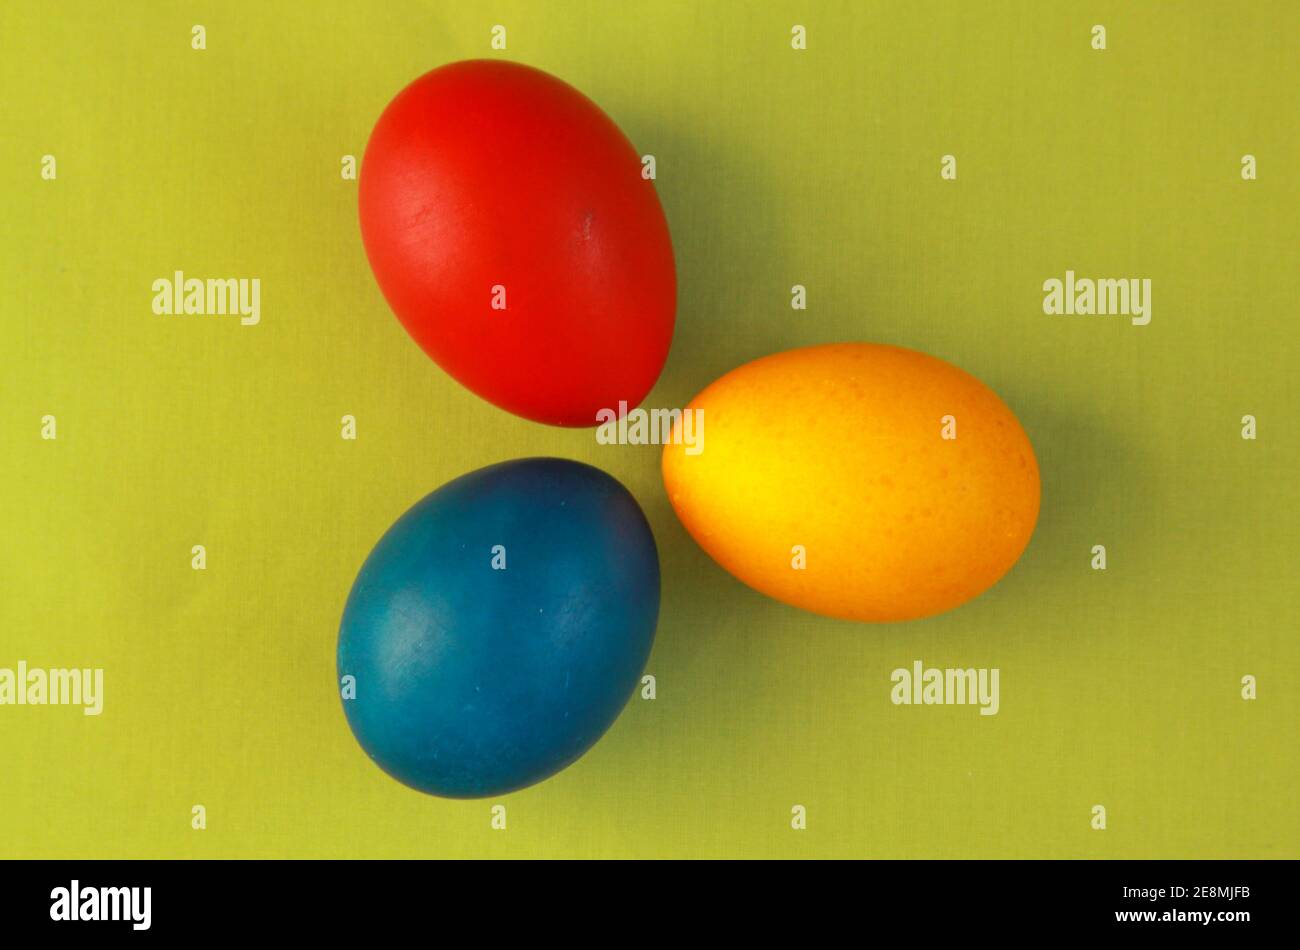 Redondo rojo, amarillo y azul huevos de Pascua de color sobre fondo verde vivo 2020 concepto. La pintura de huevos es una tradición cristiana durante las vacaciones de Pascua al Foto de stock